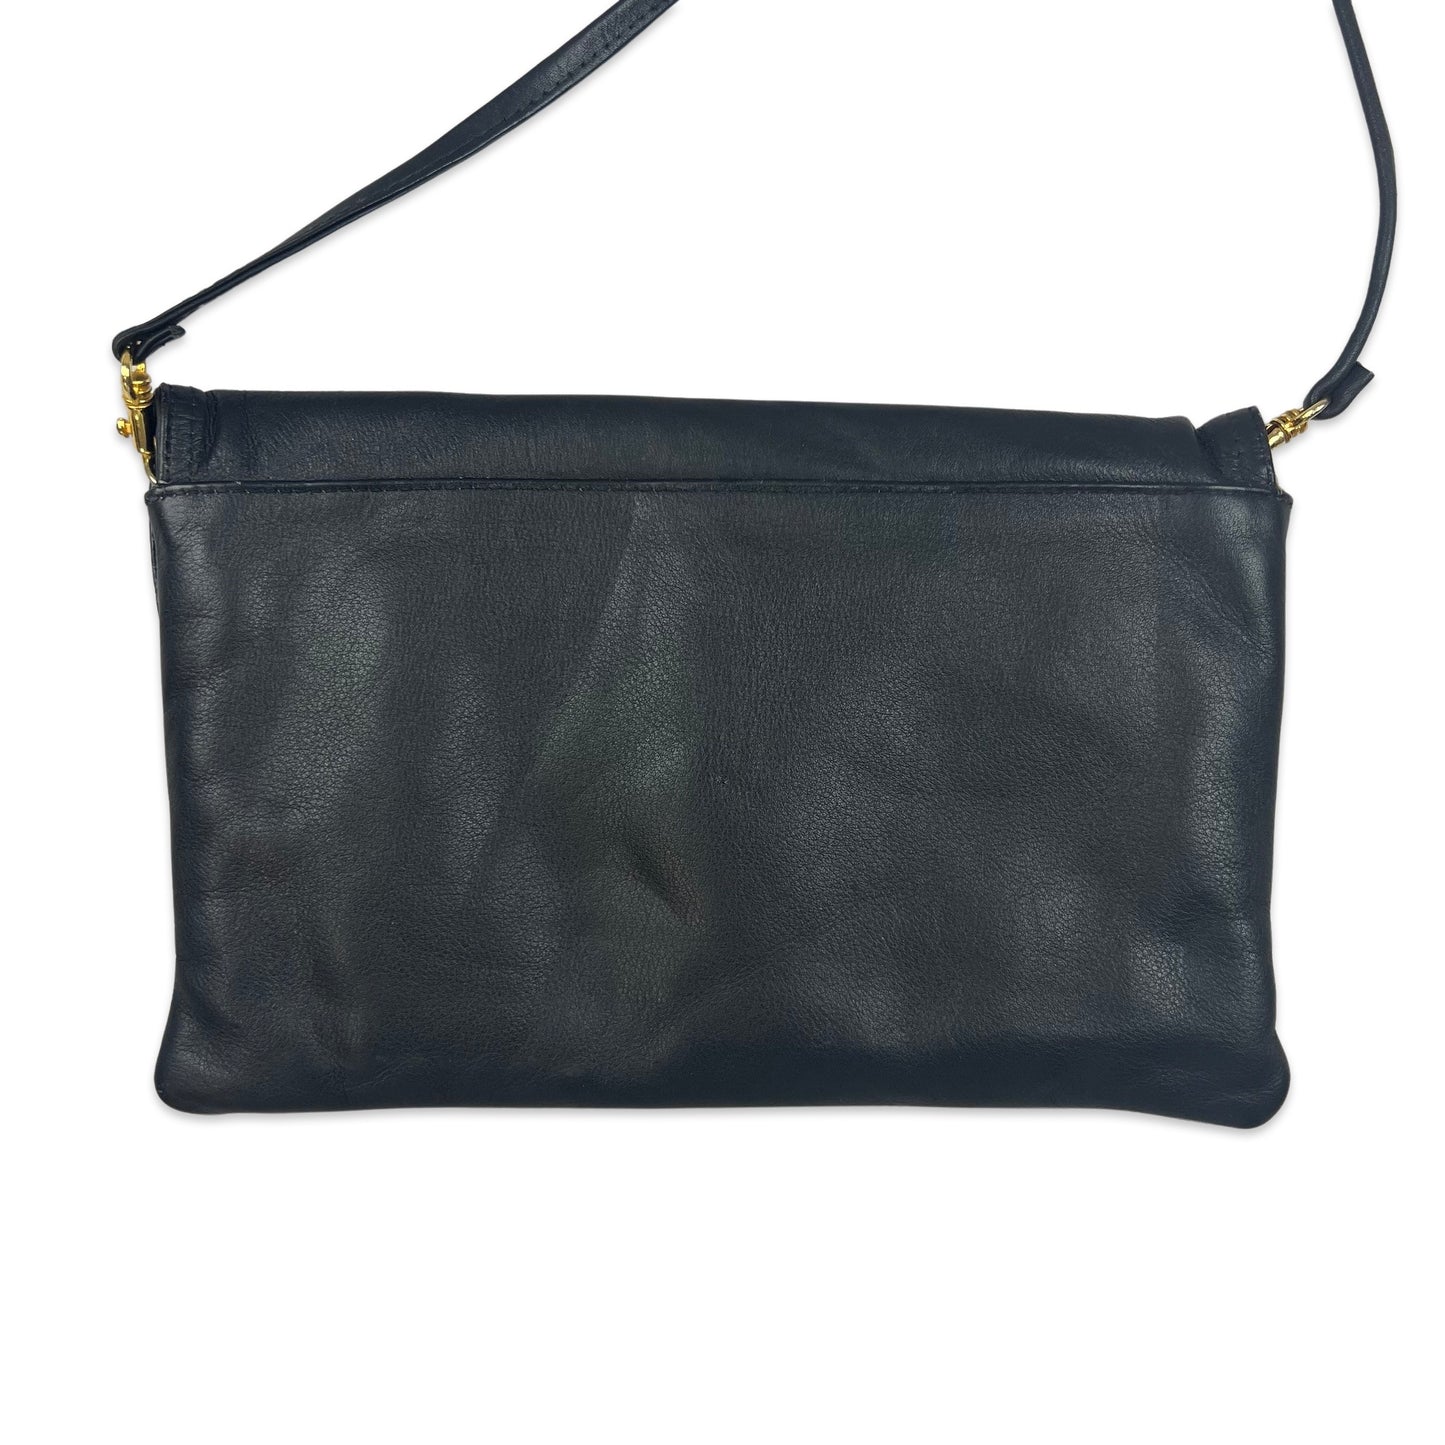 90s Vintage Clutch Black Leather Handbag